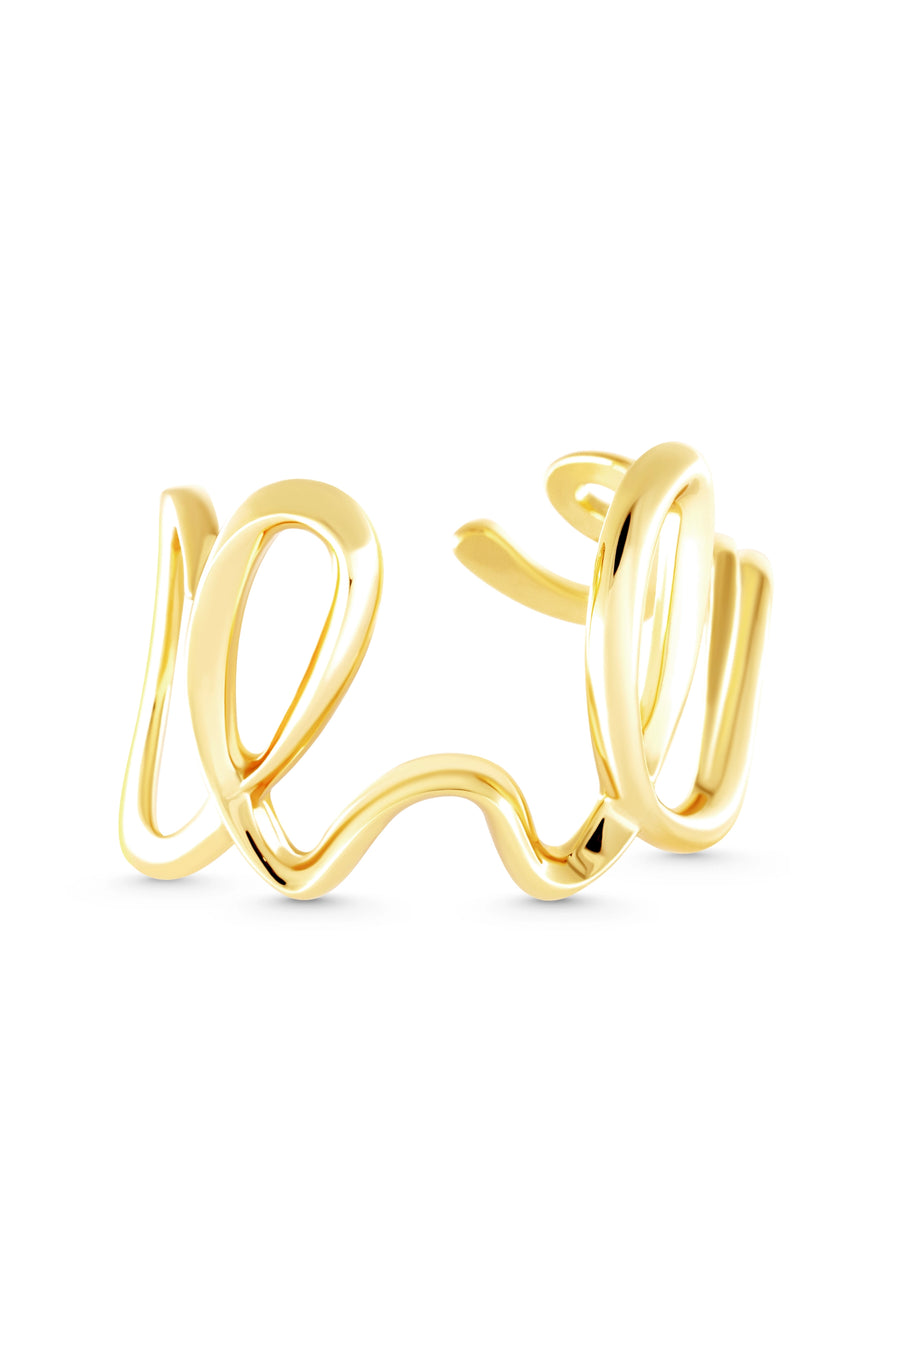 CROWN Cuff. Winding line design cuff bracelet, 18K gold vermeil, handmade, hypoallergenic, water-resistant